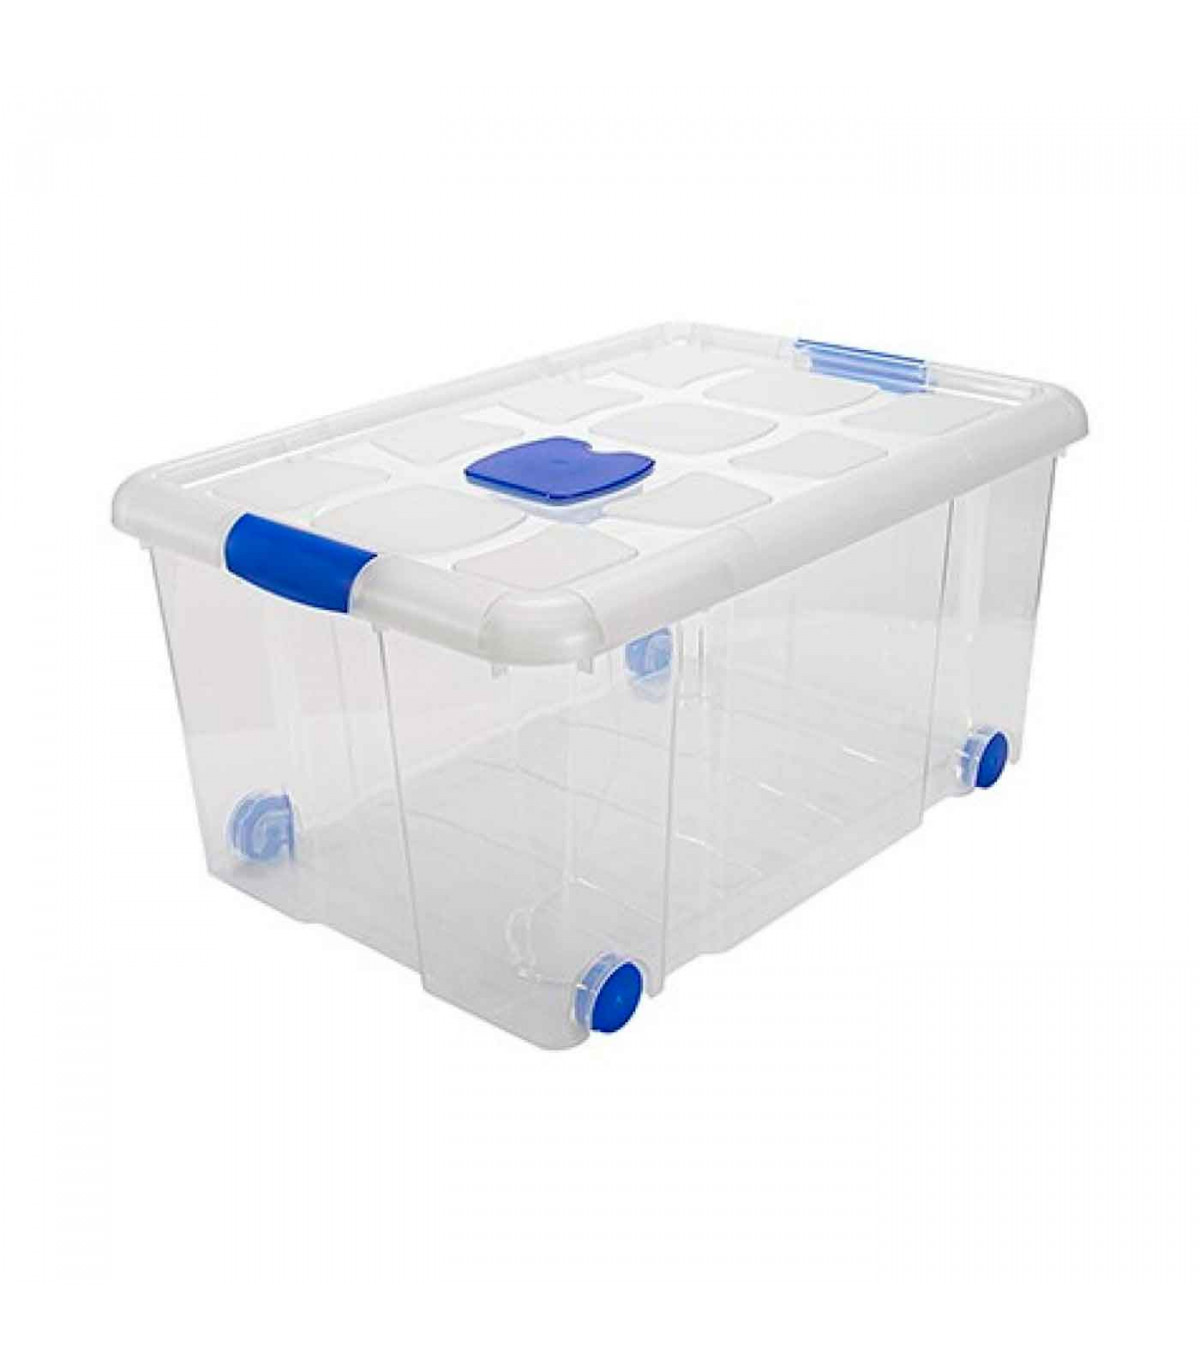 Caja transparente con separadores y ruedas - Orden en casa